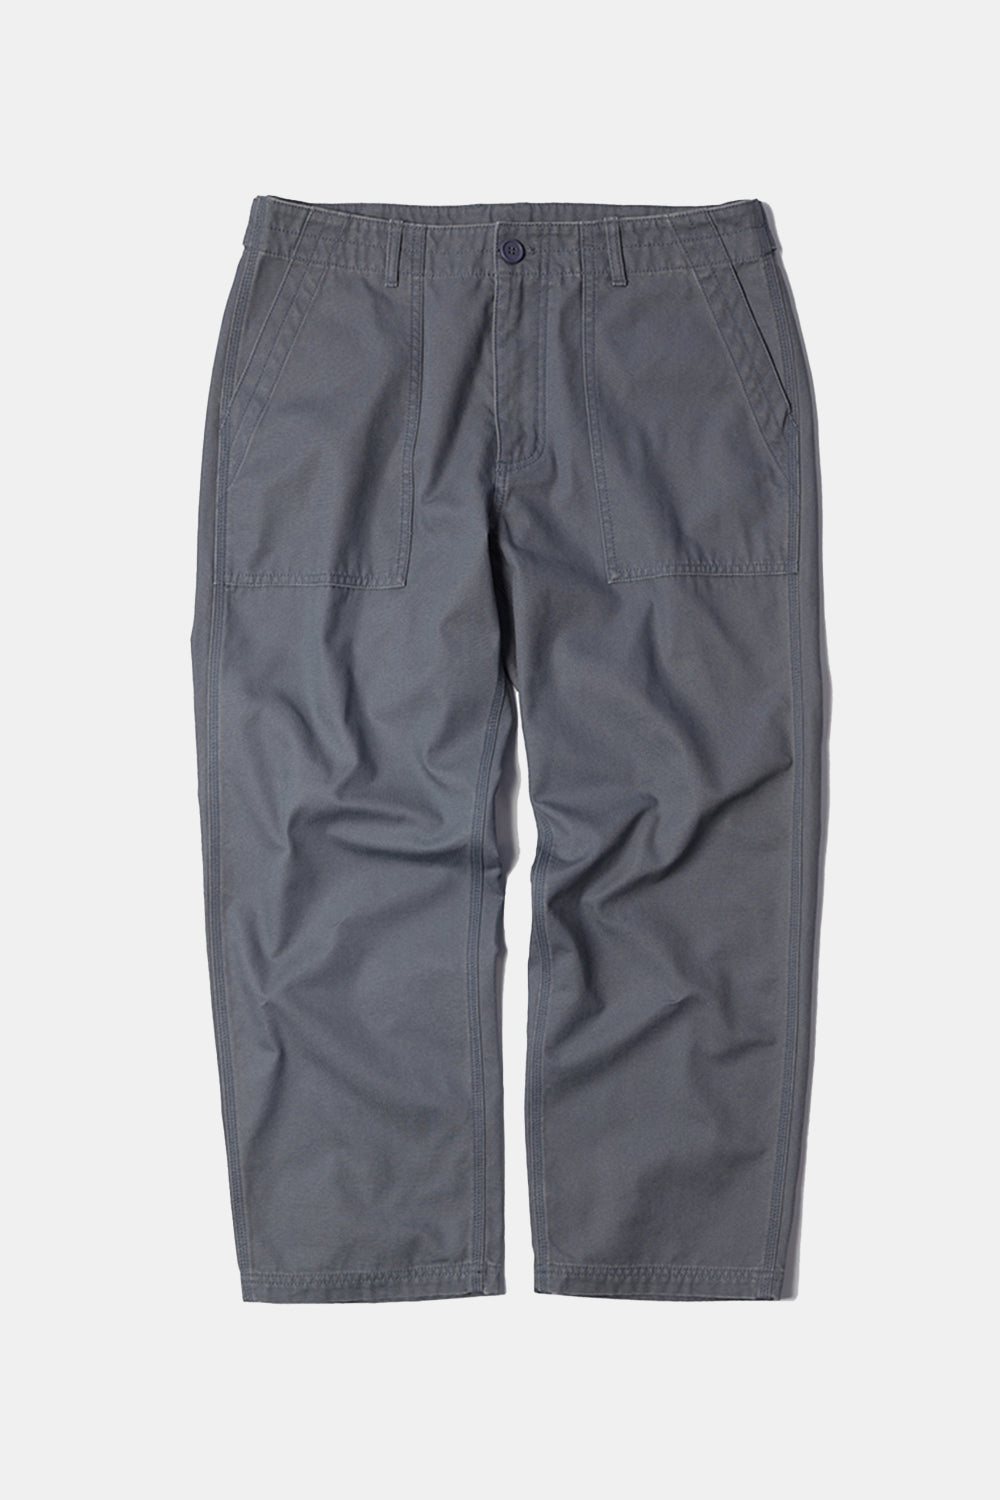 Frizmworks Jungle Cloth Fatigue Pants (Ash Violet)